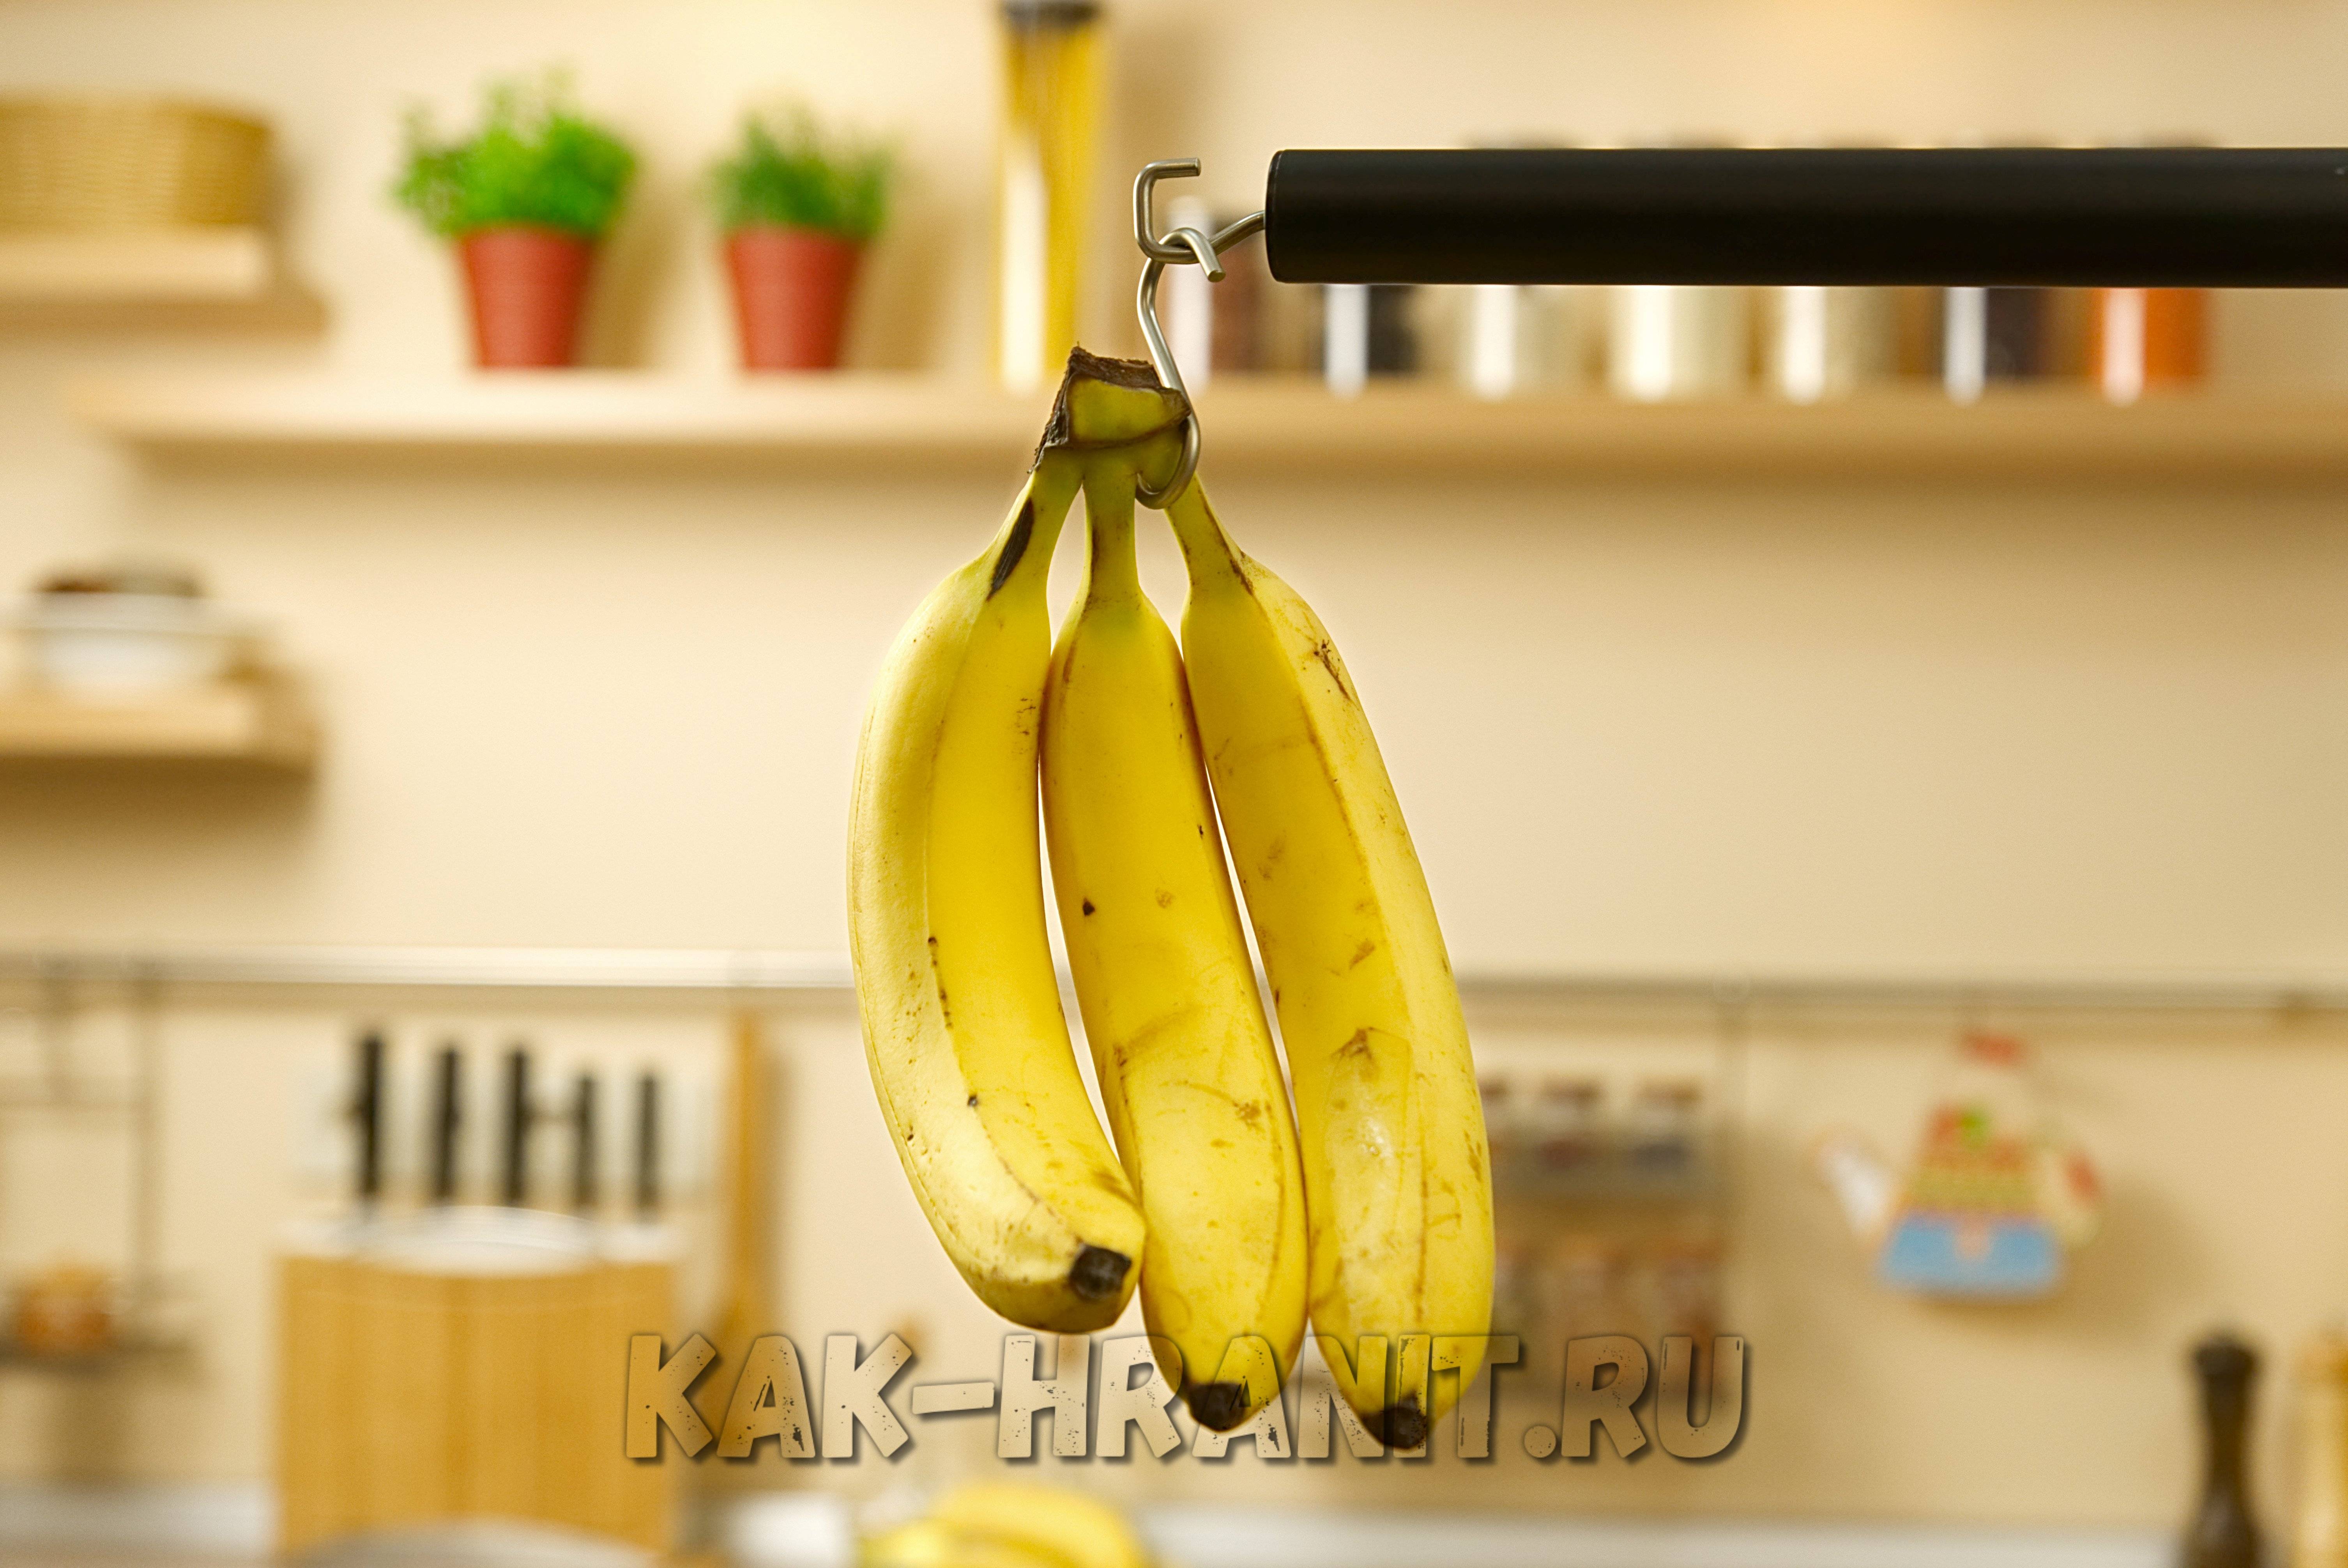 Как правильно хранить бананы в домашних условиях